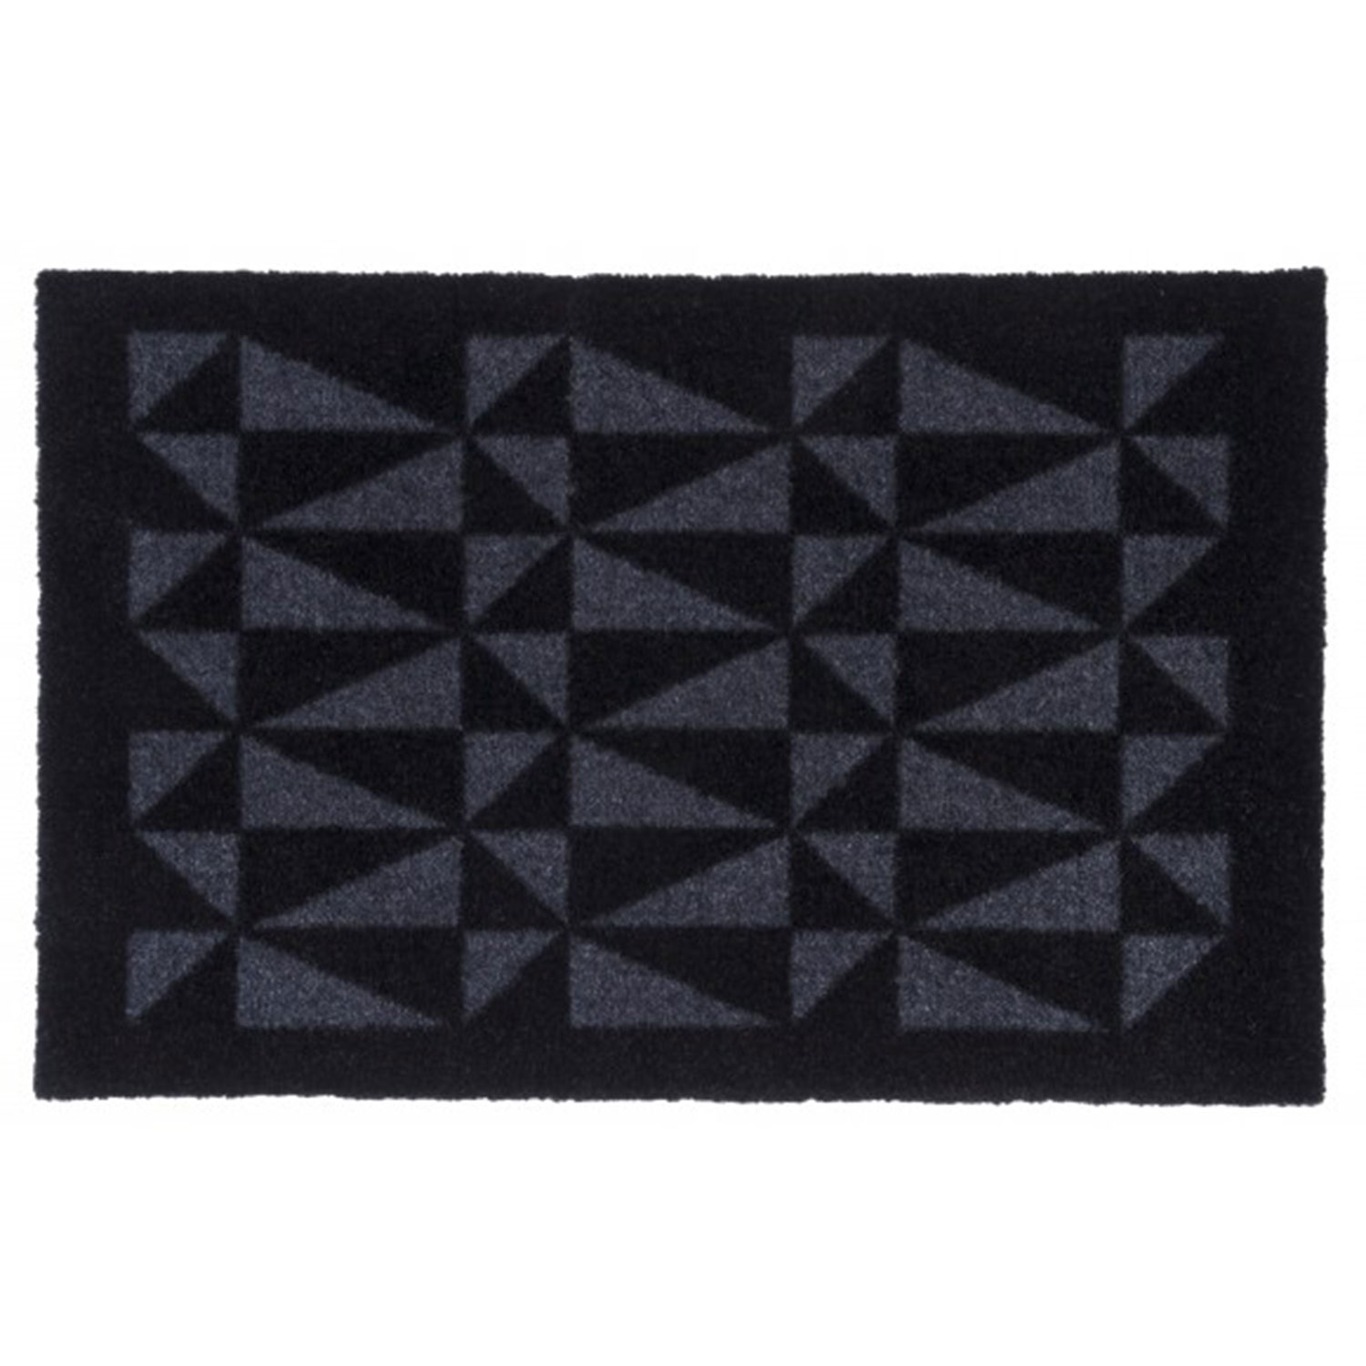 Graphic Doormat 40x60cm, Black/Grey